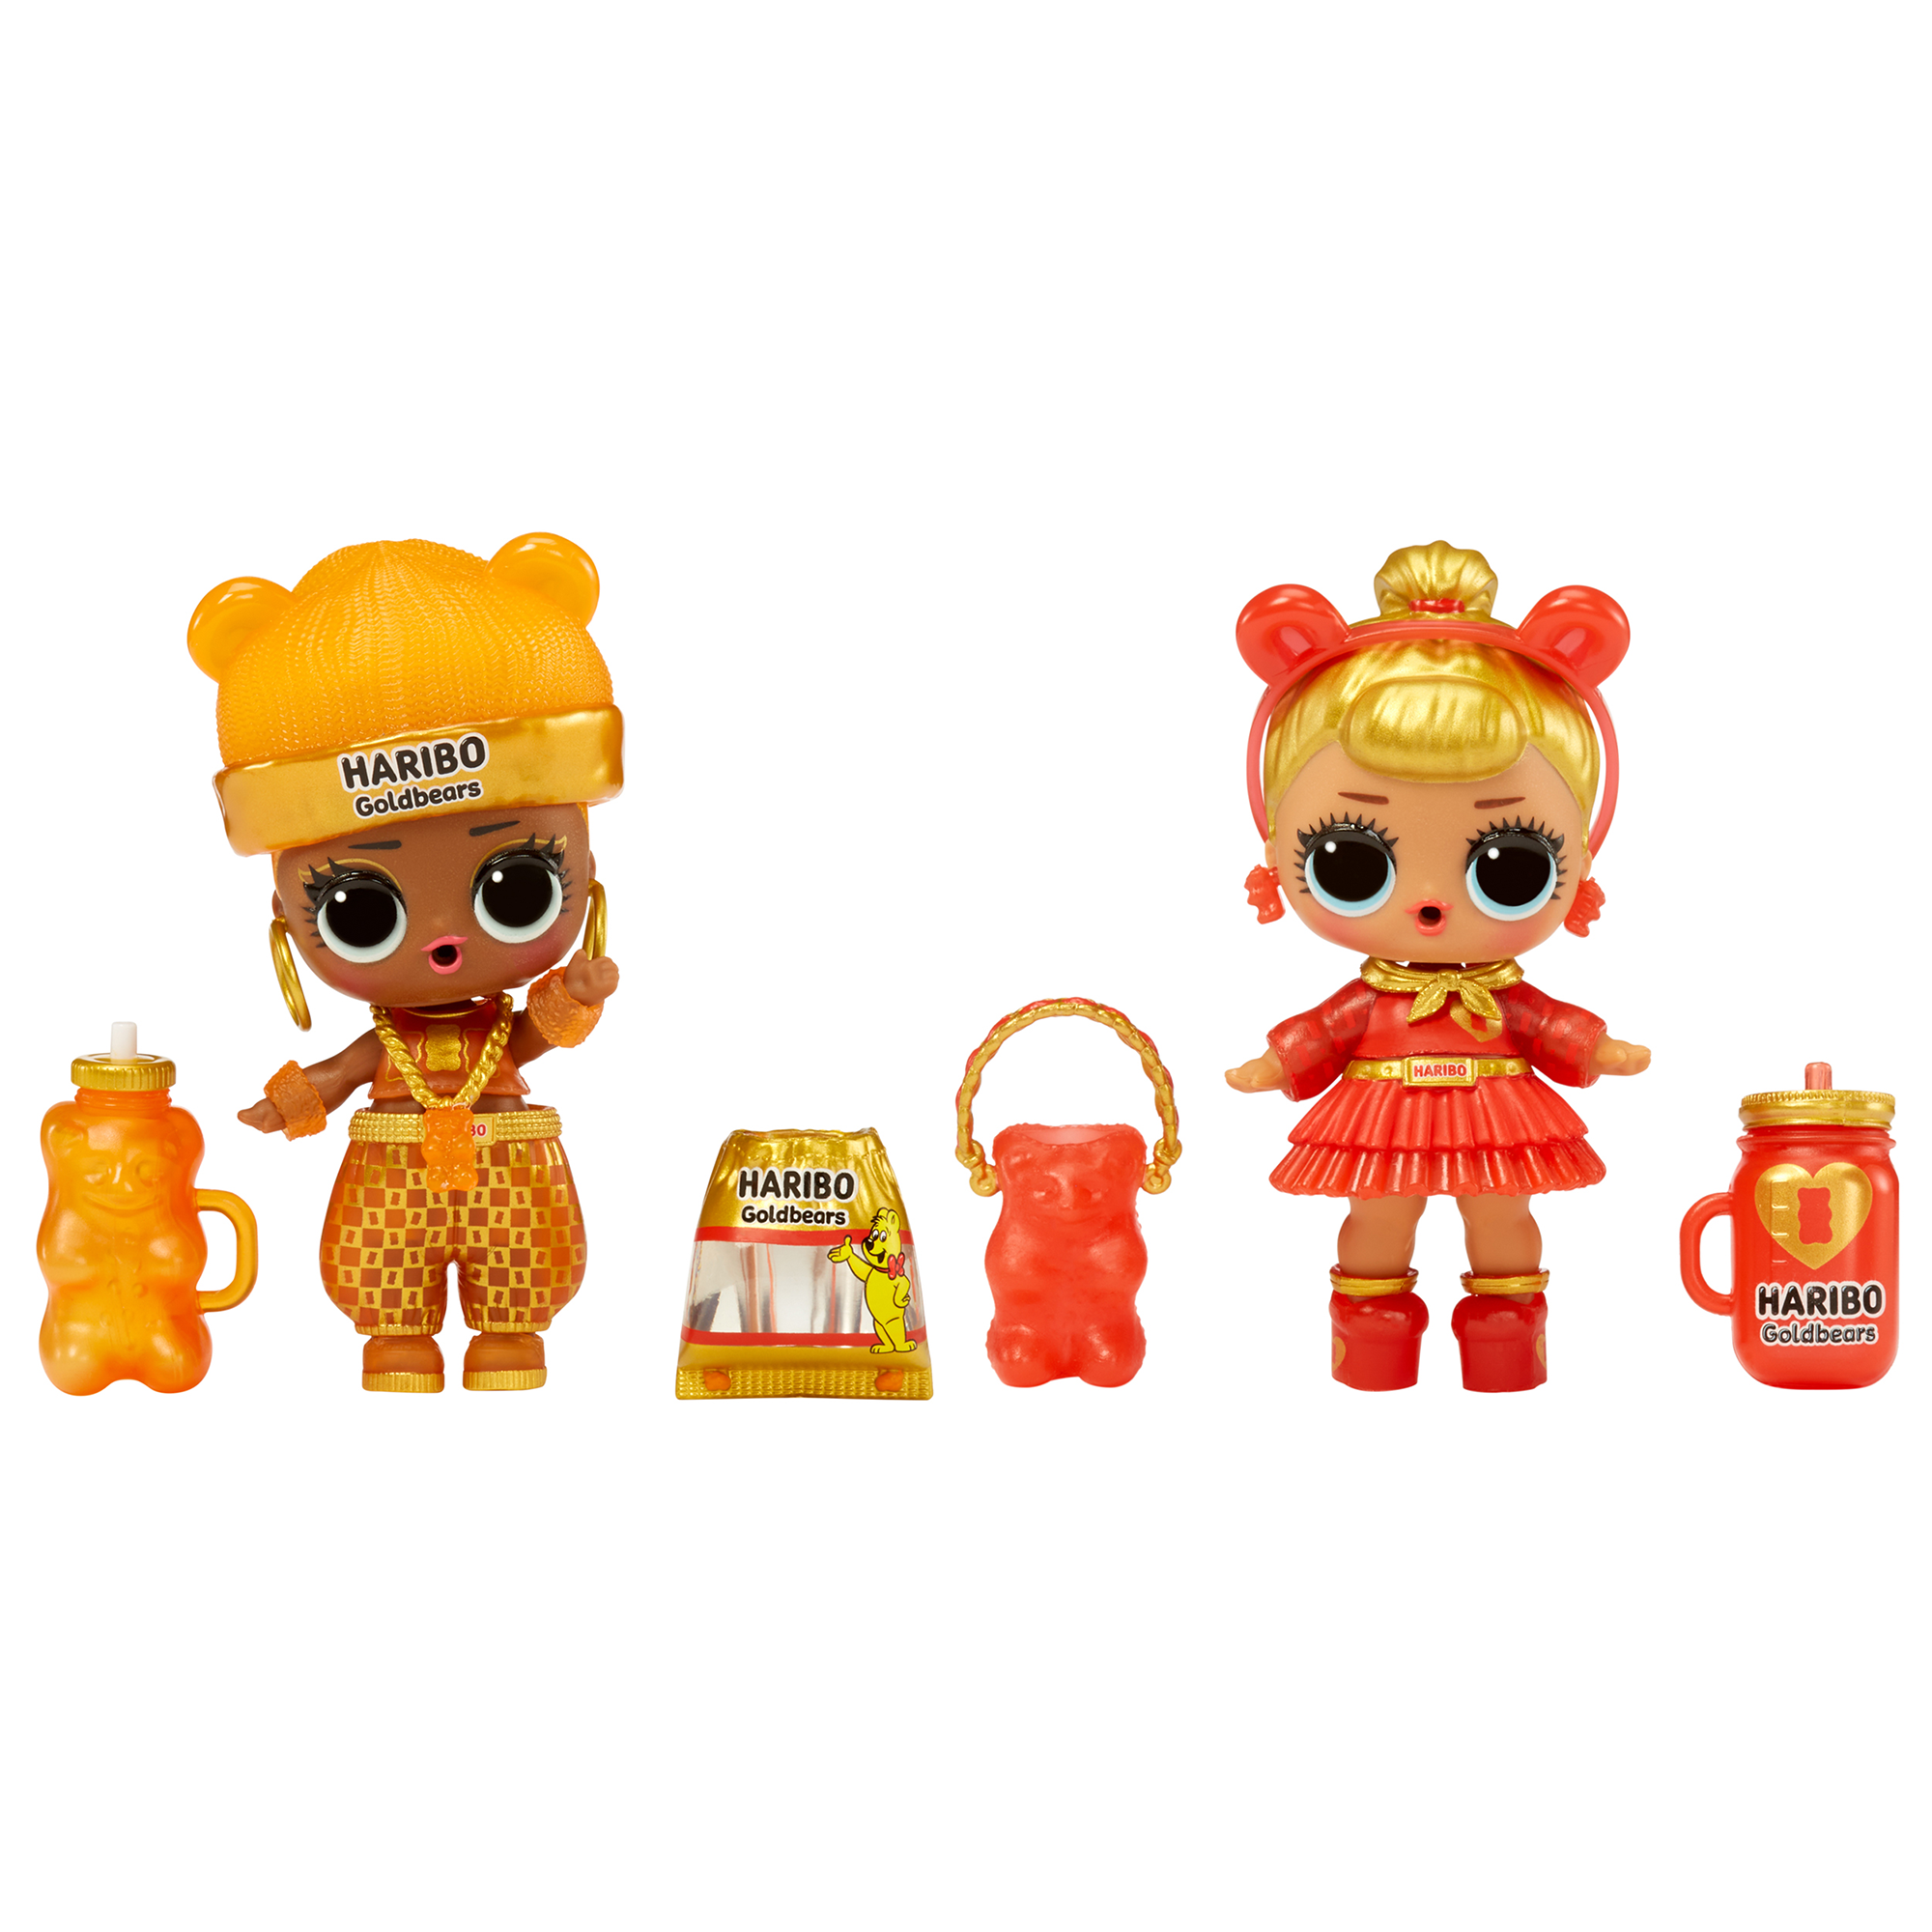 Lol surprise loves mini sweets deluxe x haribo - goldbears - include 3 bambole a tema caramelle, accessori divertenti e sorprese d’acqua - LOL